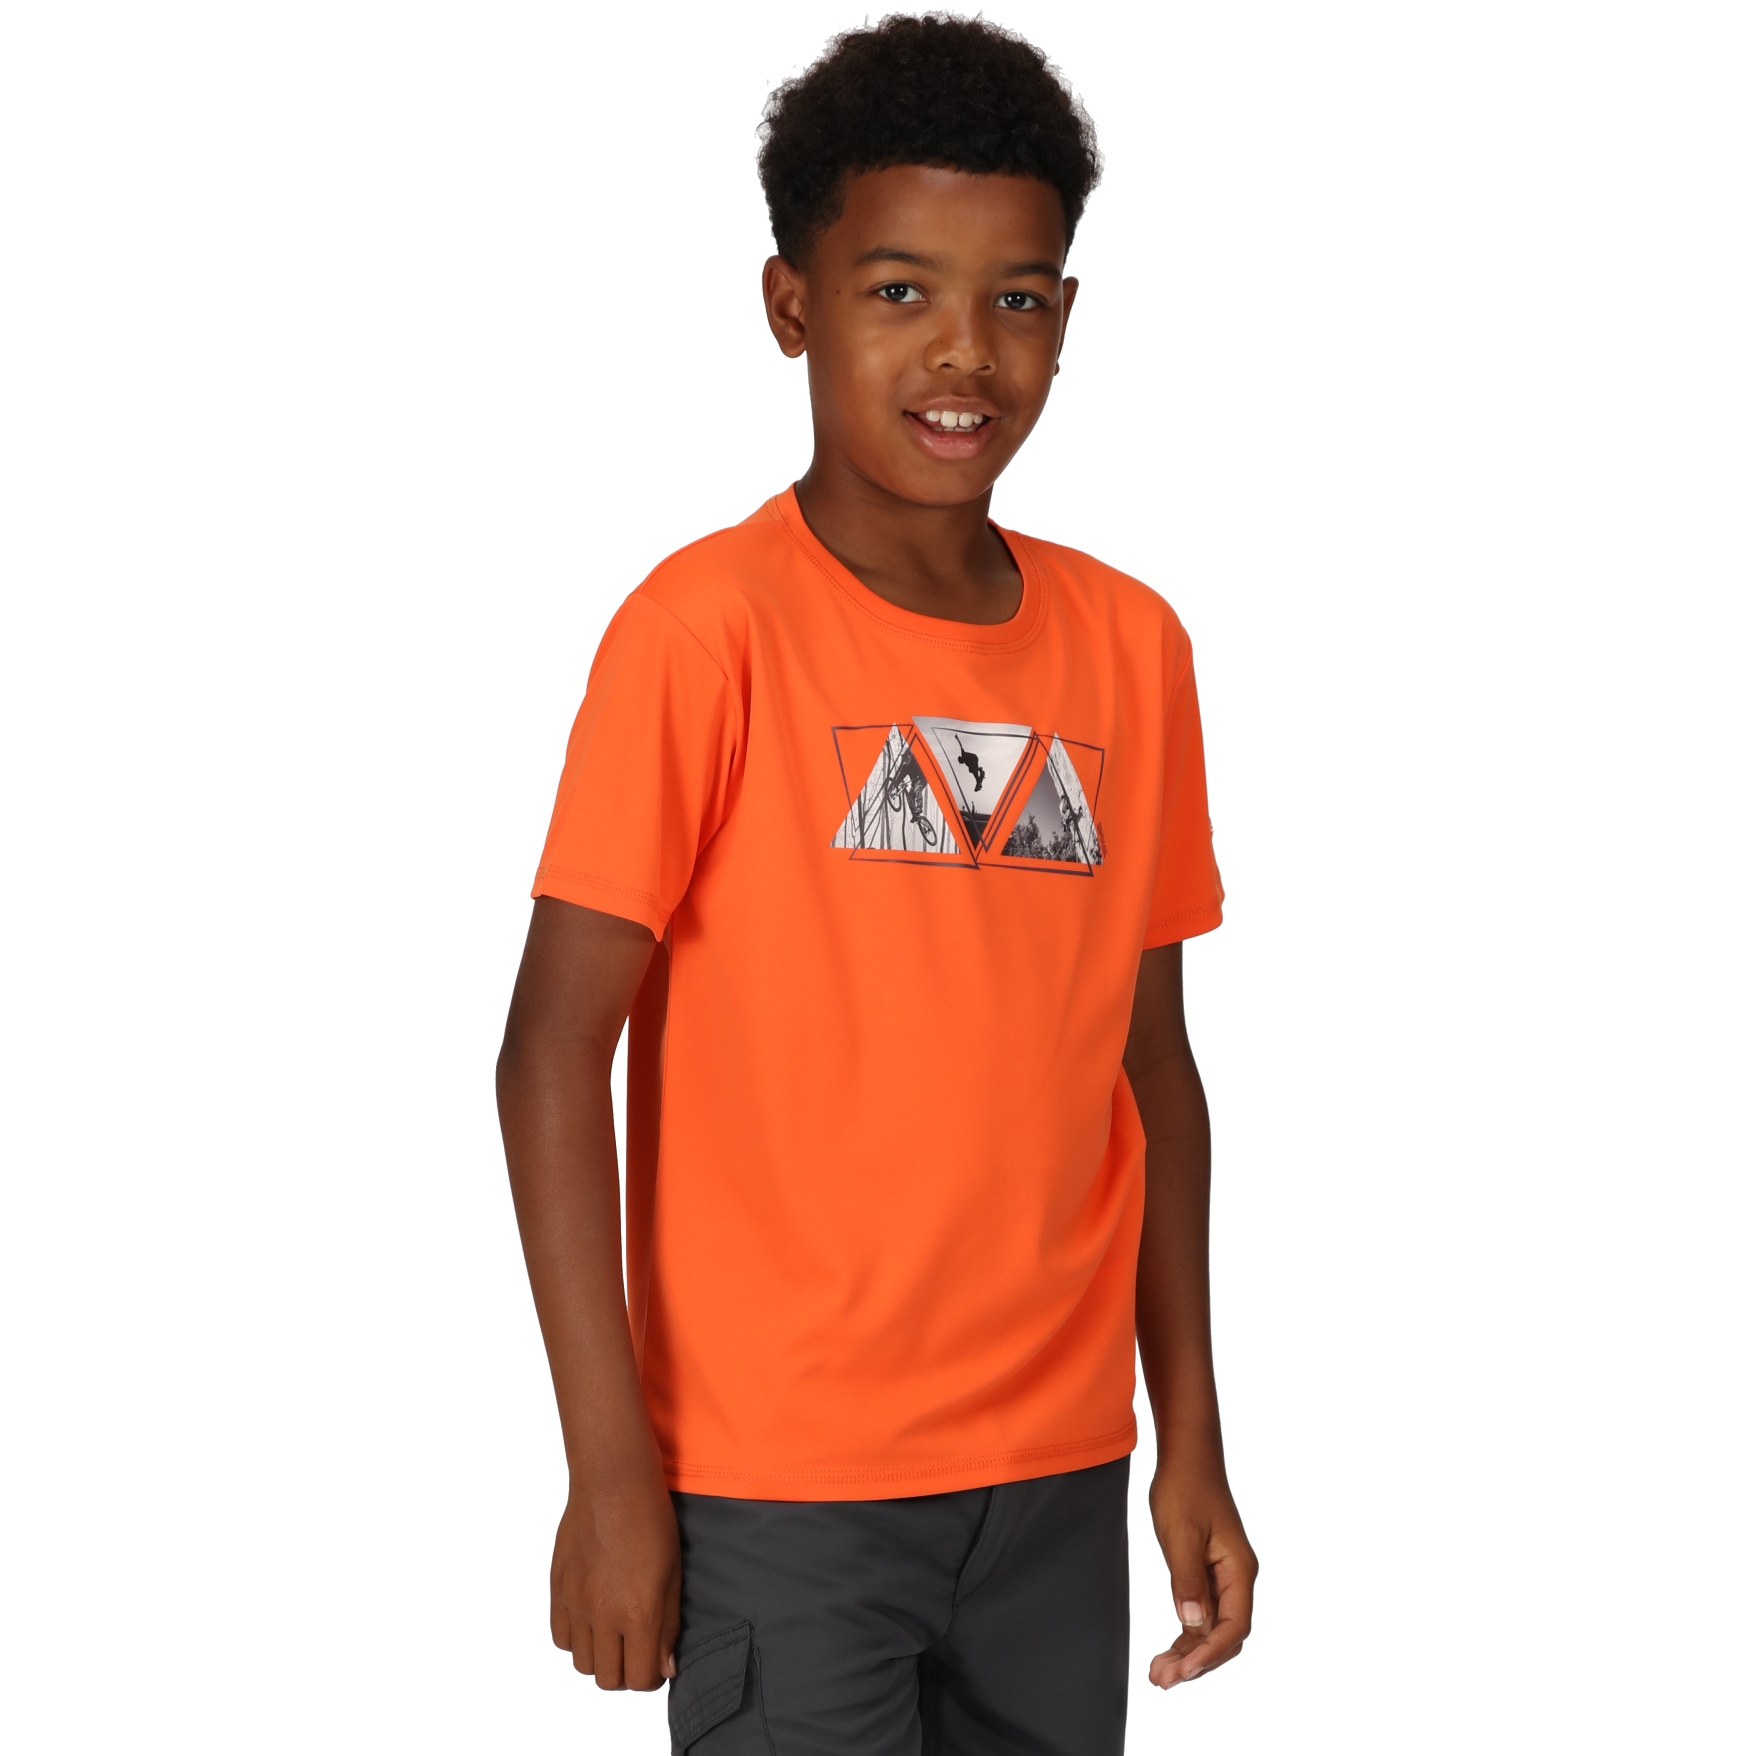 Produktbild von Regatta Alvarado VII T-Shirt Kinder - Blaze Orange 4JC